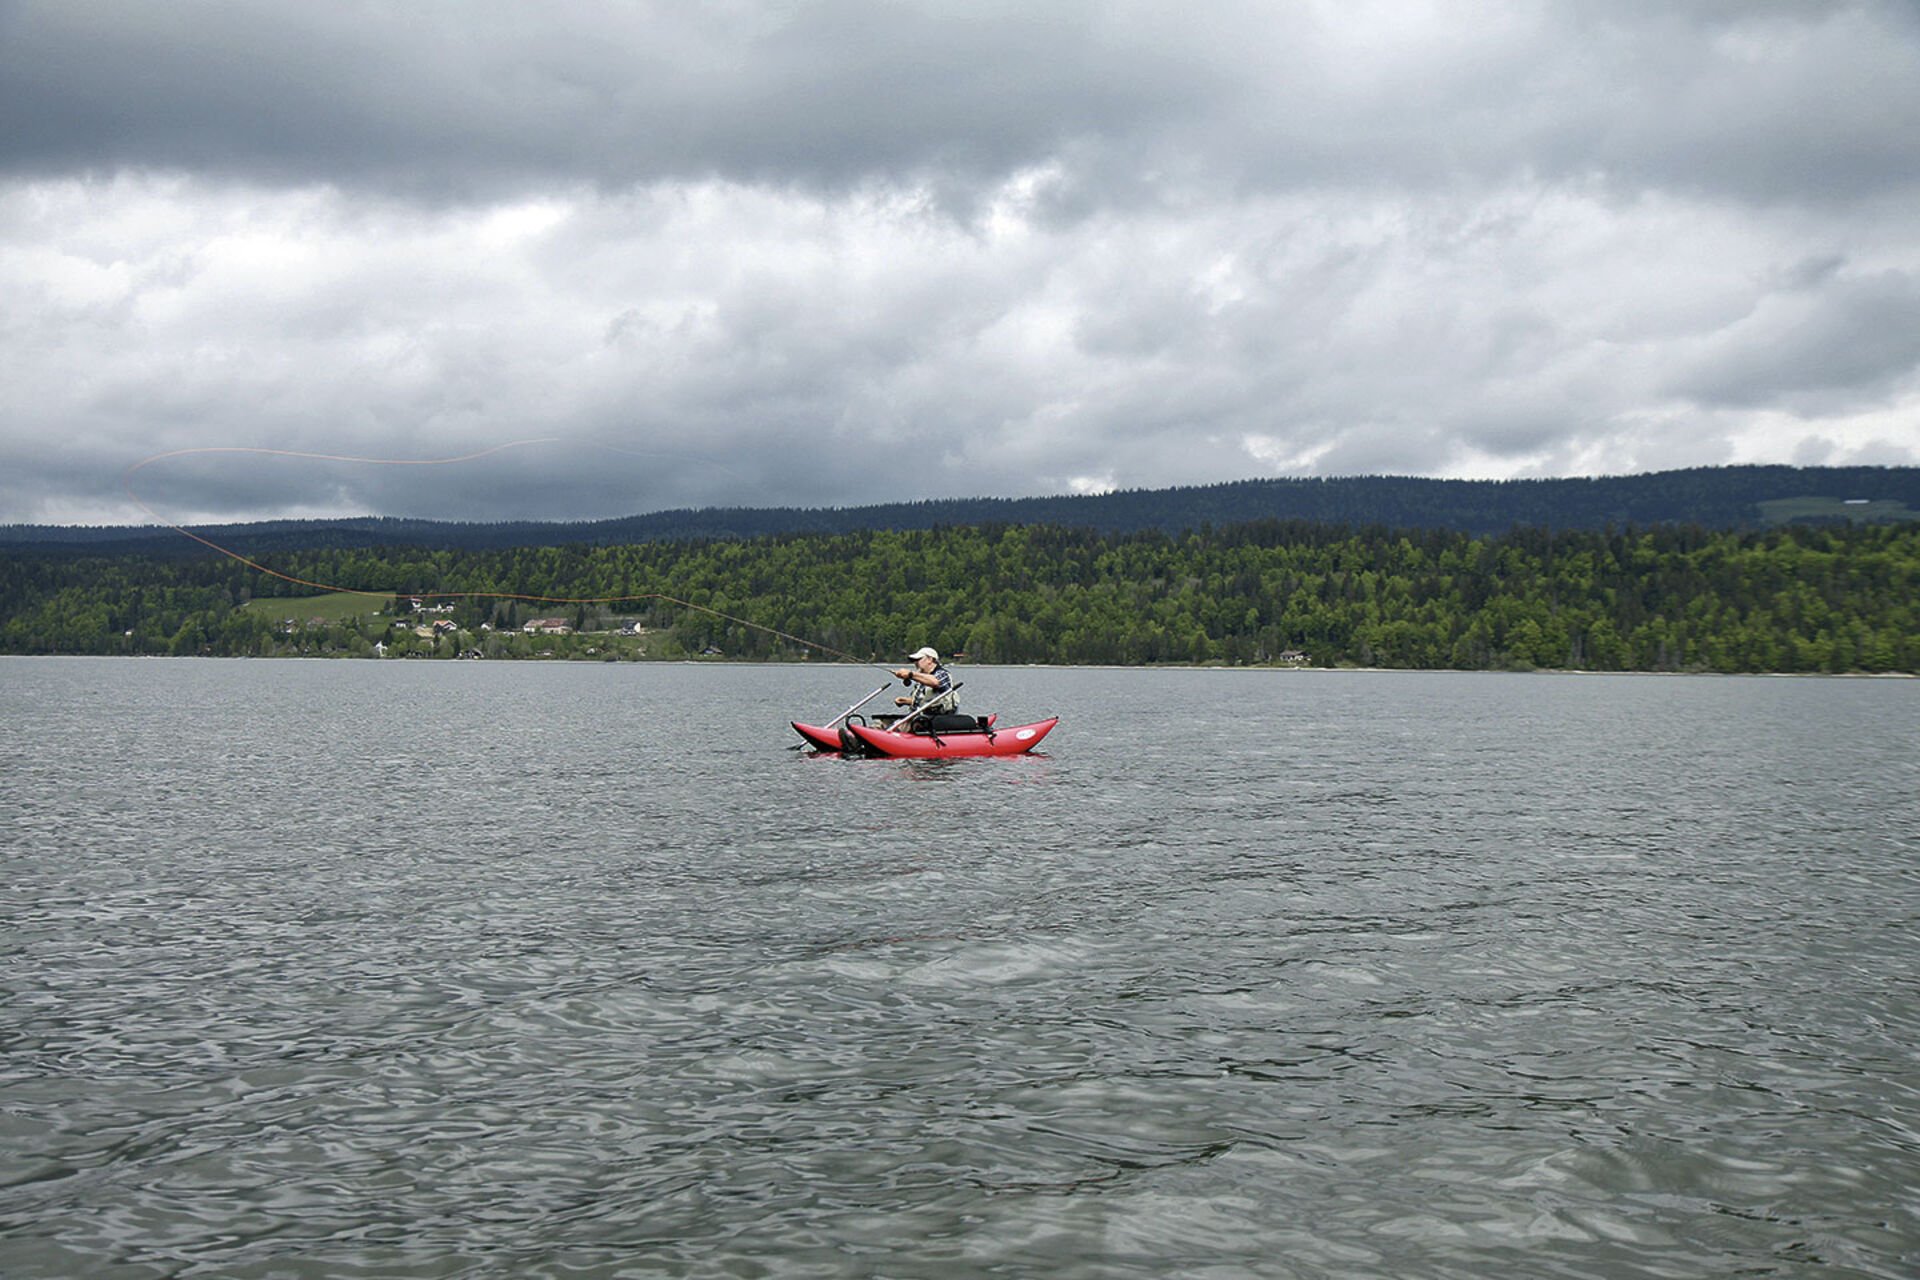  Auch während der warmen Jahreszeit hat der Lac de Joux fischereiliche Reize zu bieten. Mit der Fliege fängt man im Frühling Seeforellen und im Sommer Hechte und Egli. Nebst Wanderbooten sind auch Kanus, Kajaks, Belly- und Pontoonboote erlaubt.  